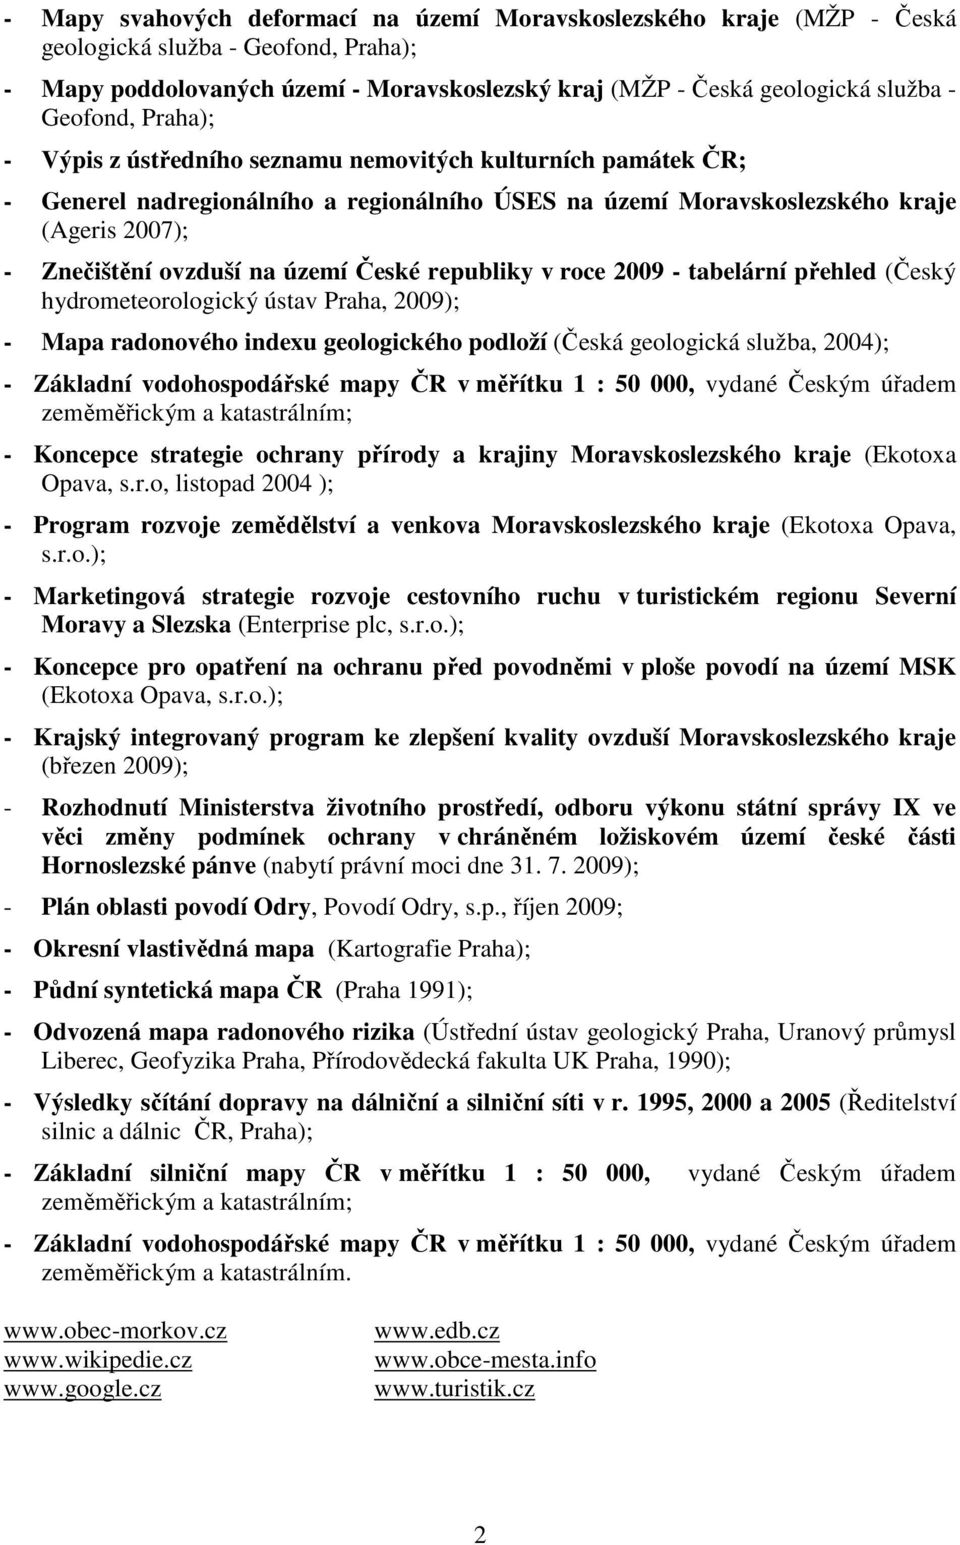 území České republiky v roce 2009 - tabelární přehled (Český hydrometeorologický ústav Praha, 2009); - Mapa radonového indexu geologického podloží (Česká geologická služba, 2004); - Základní